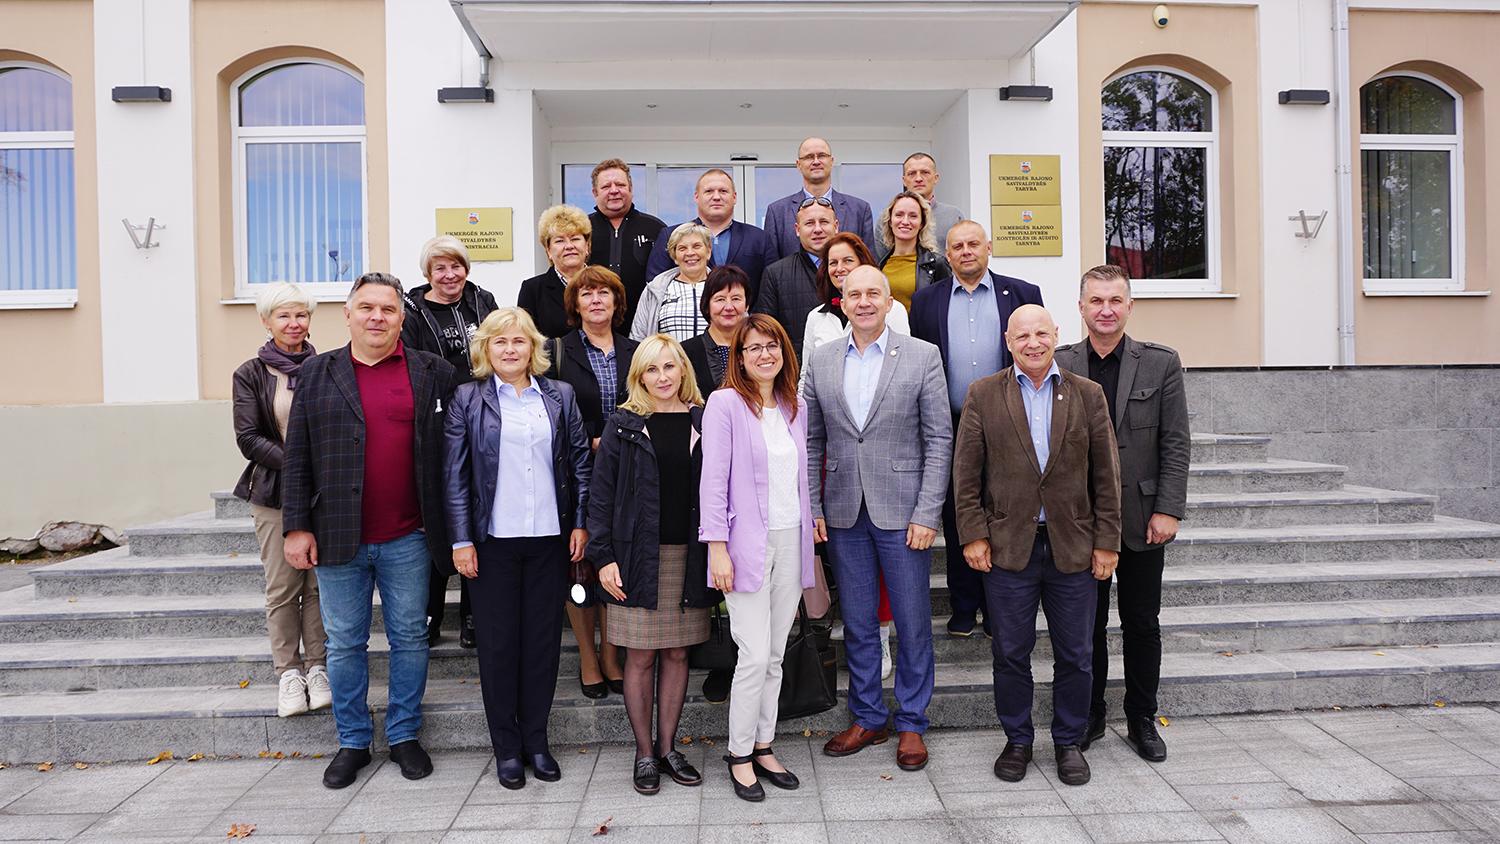 Lankėsi Jonavos rajono savivaldybės atstovai / Savivaldybėje – svečių iš Jonavos vizitas.